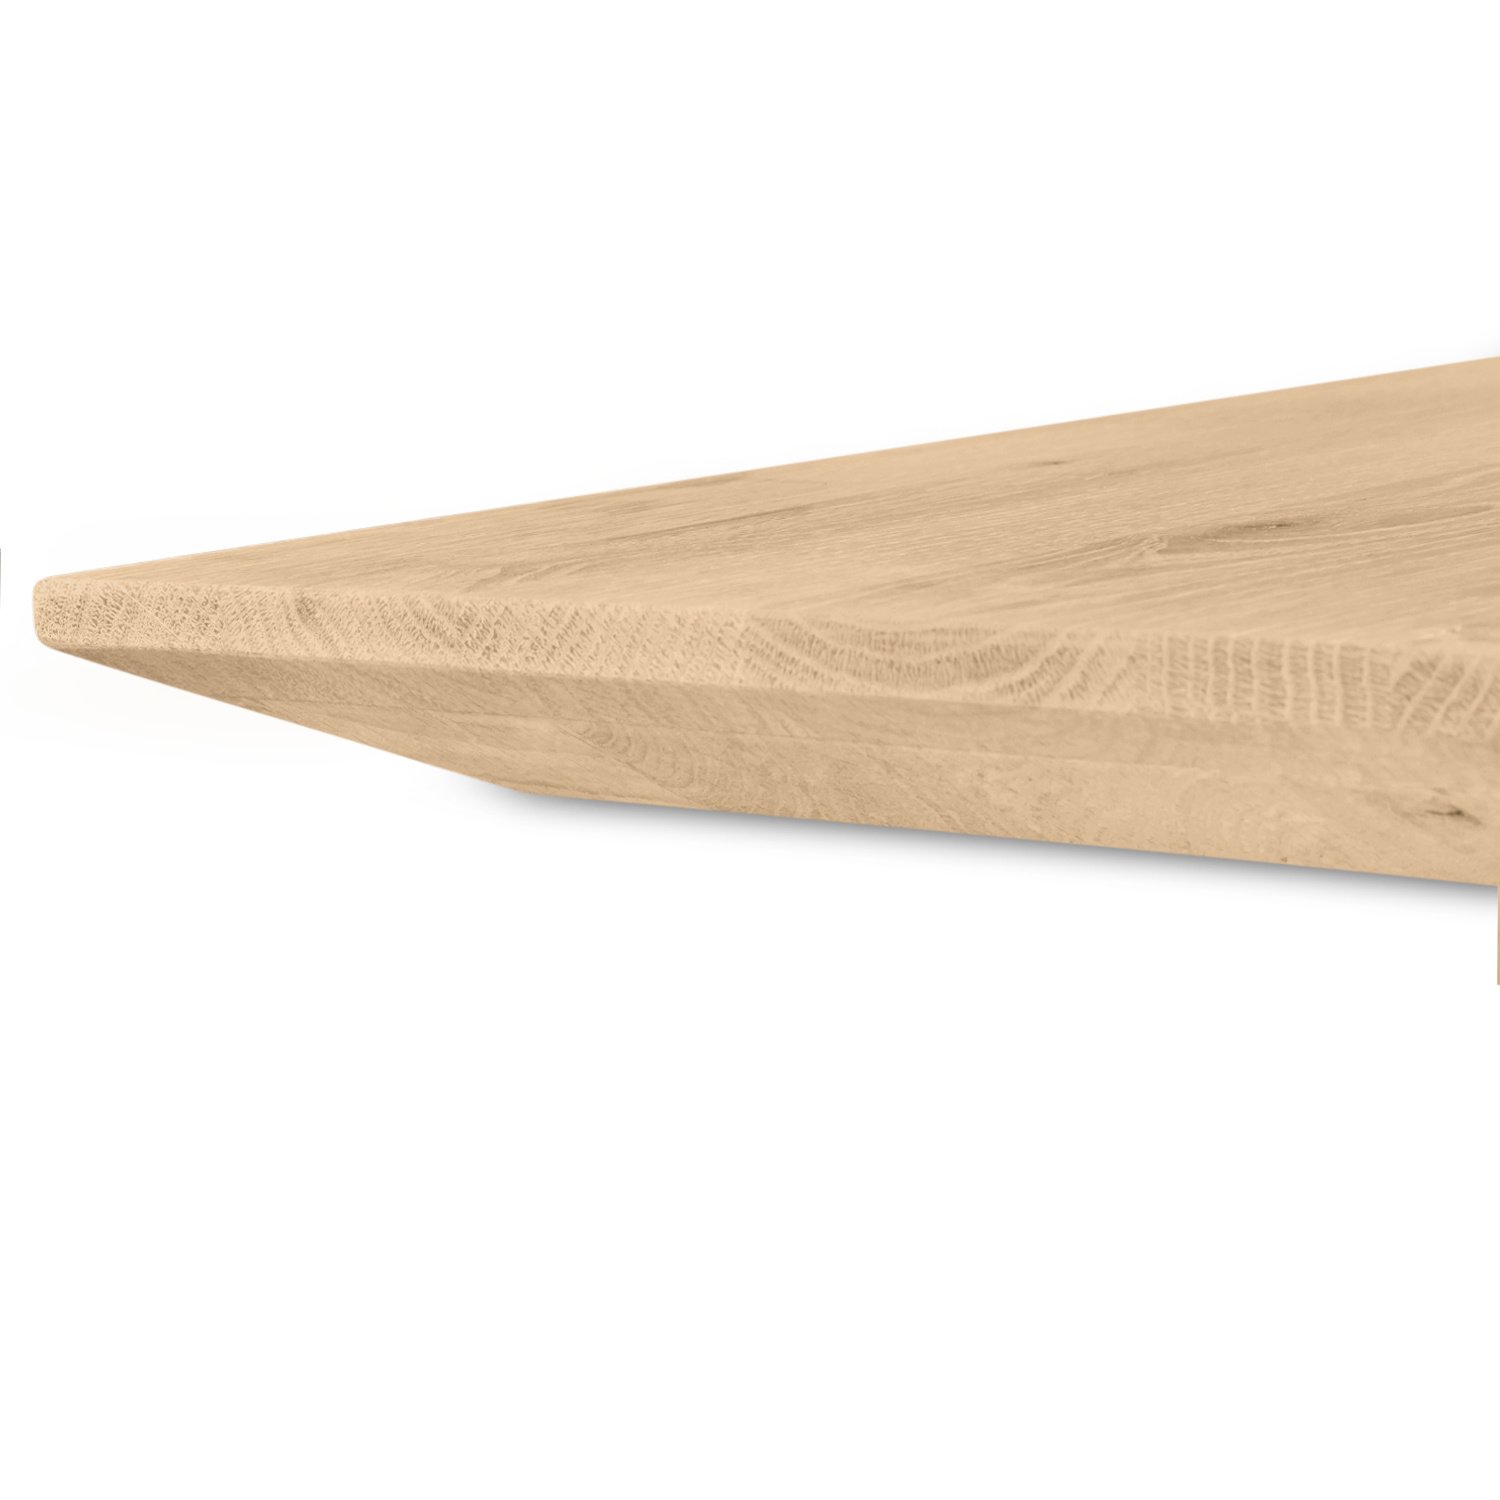  Eiken  tafelblad verjongd - op maat - 4 cm dik (2-laags) - met verjongde rand - foutvrij Europees eikenhout - verlijmd kd 8-12% - 50-120x50-300 cm